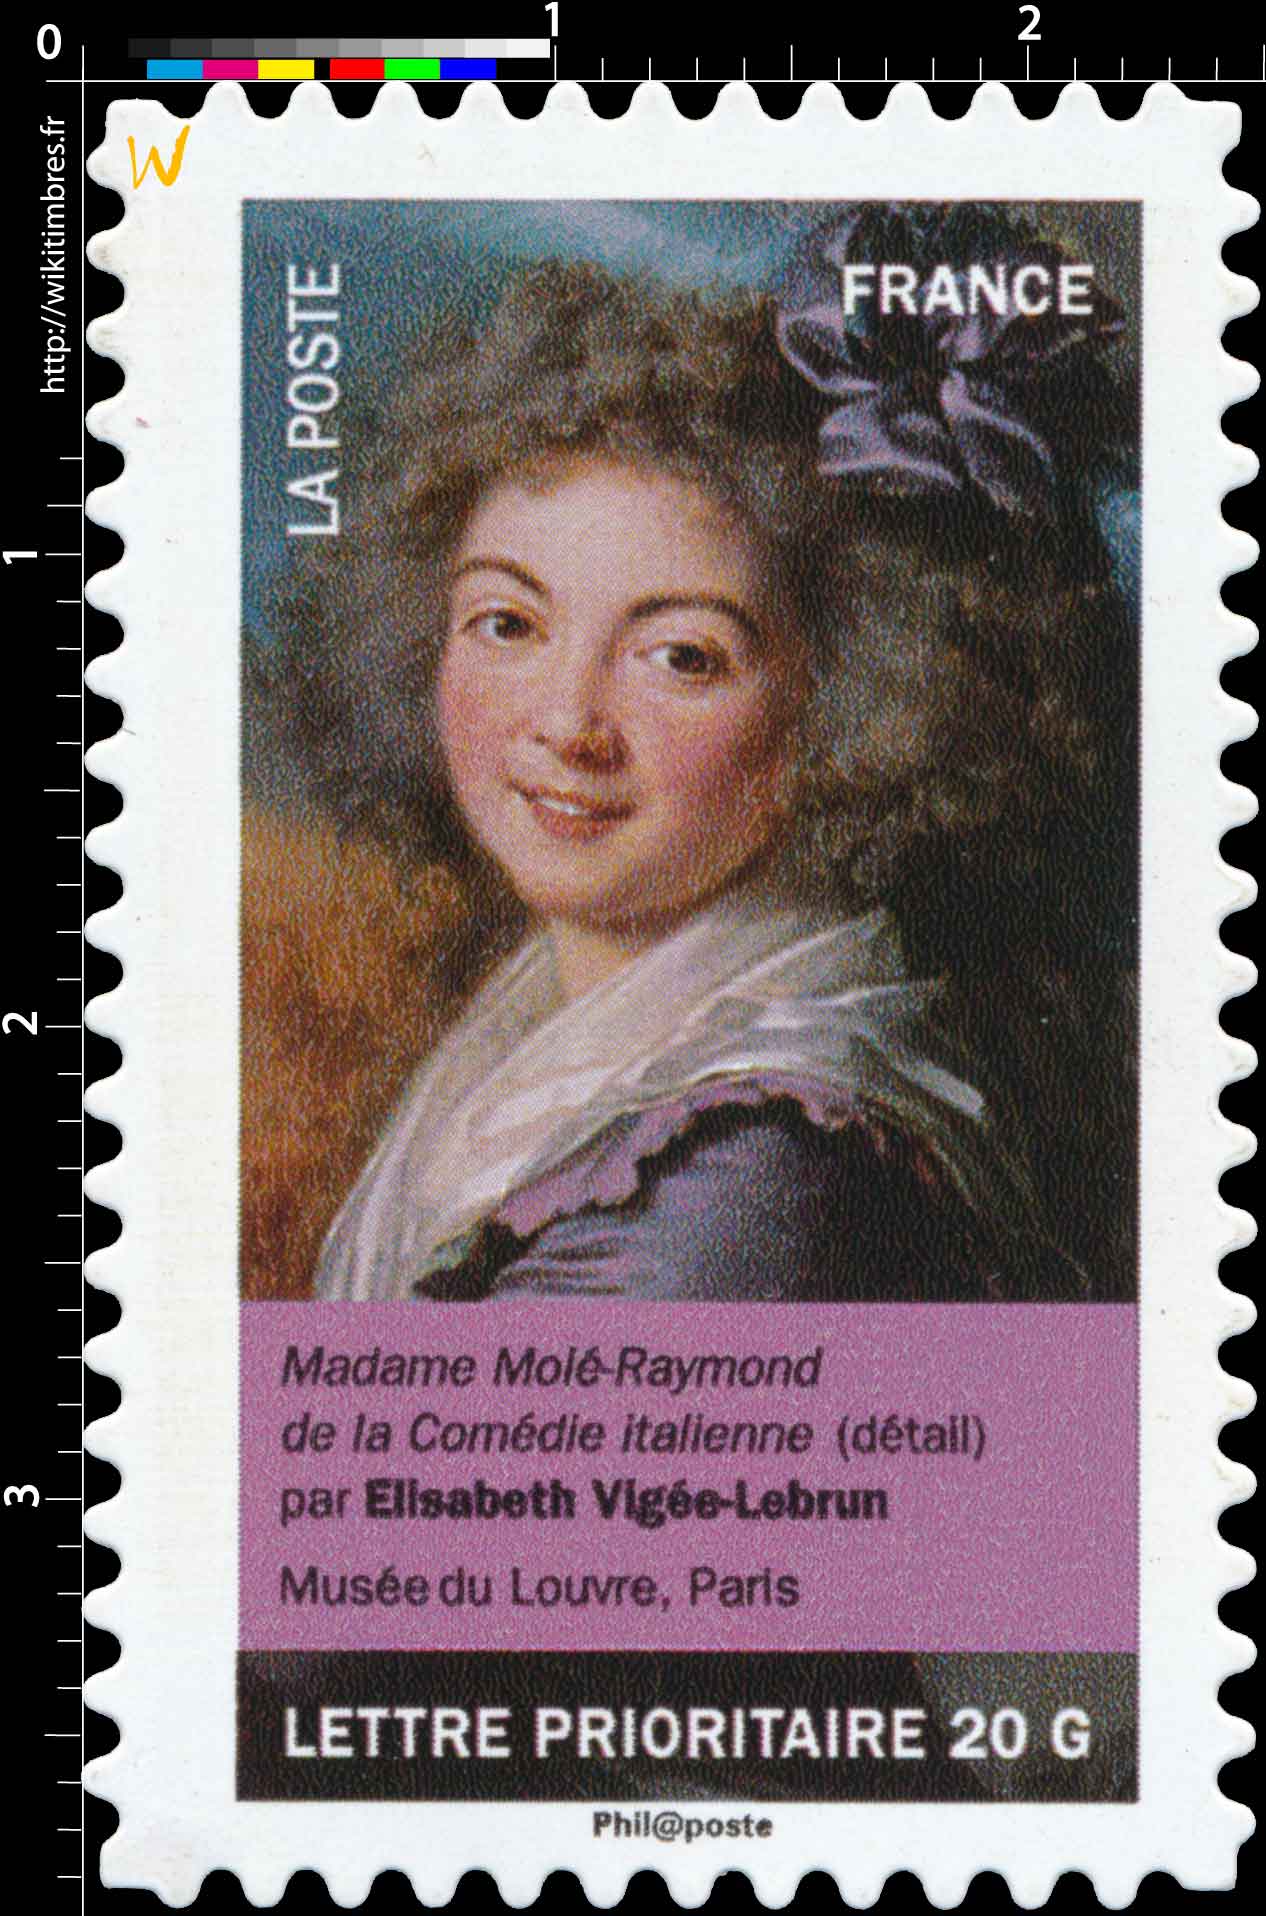 Madame Molé-Raymond de la Comédie italienne (détail) par Élisabeth Vigée-Lebrun, musée du Louvre, Paris